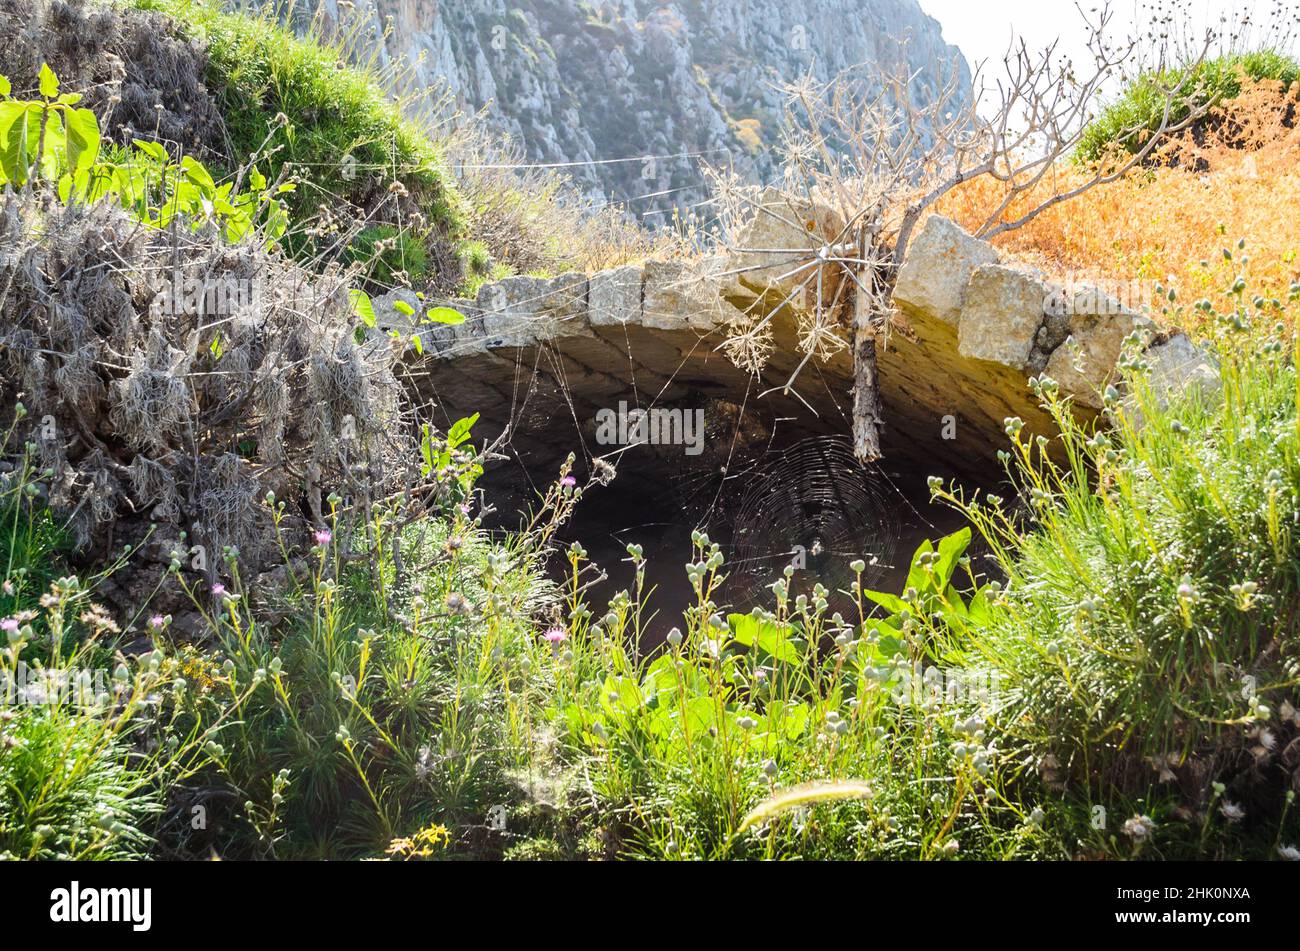 Mittelalterliche Archway-Ruinen mit Spinnennetz am Eingang in einer natürlichen Umgebung mit Büschen und Bäumen. Antikes Gebäude aus byzantinischer Zeit, Griechenland Stockfoto